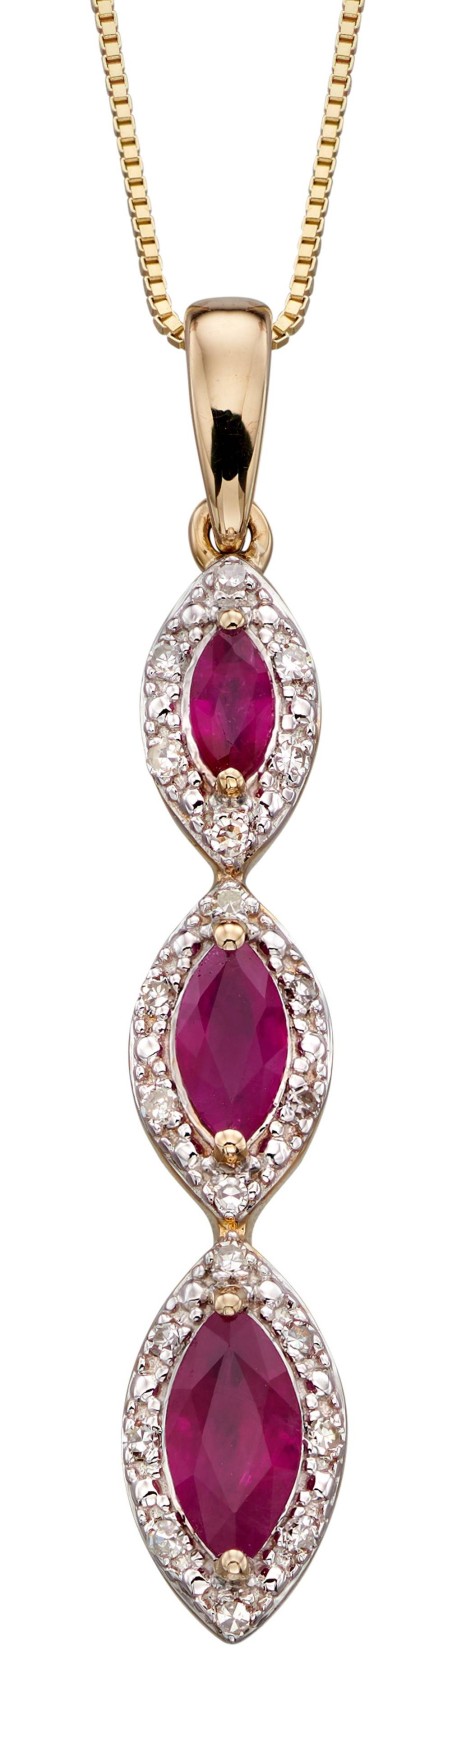 Mon-bijou - D2163 - Collier rubis et diamant sur or jaune 375/1000